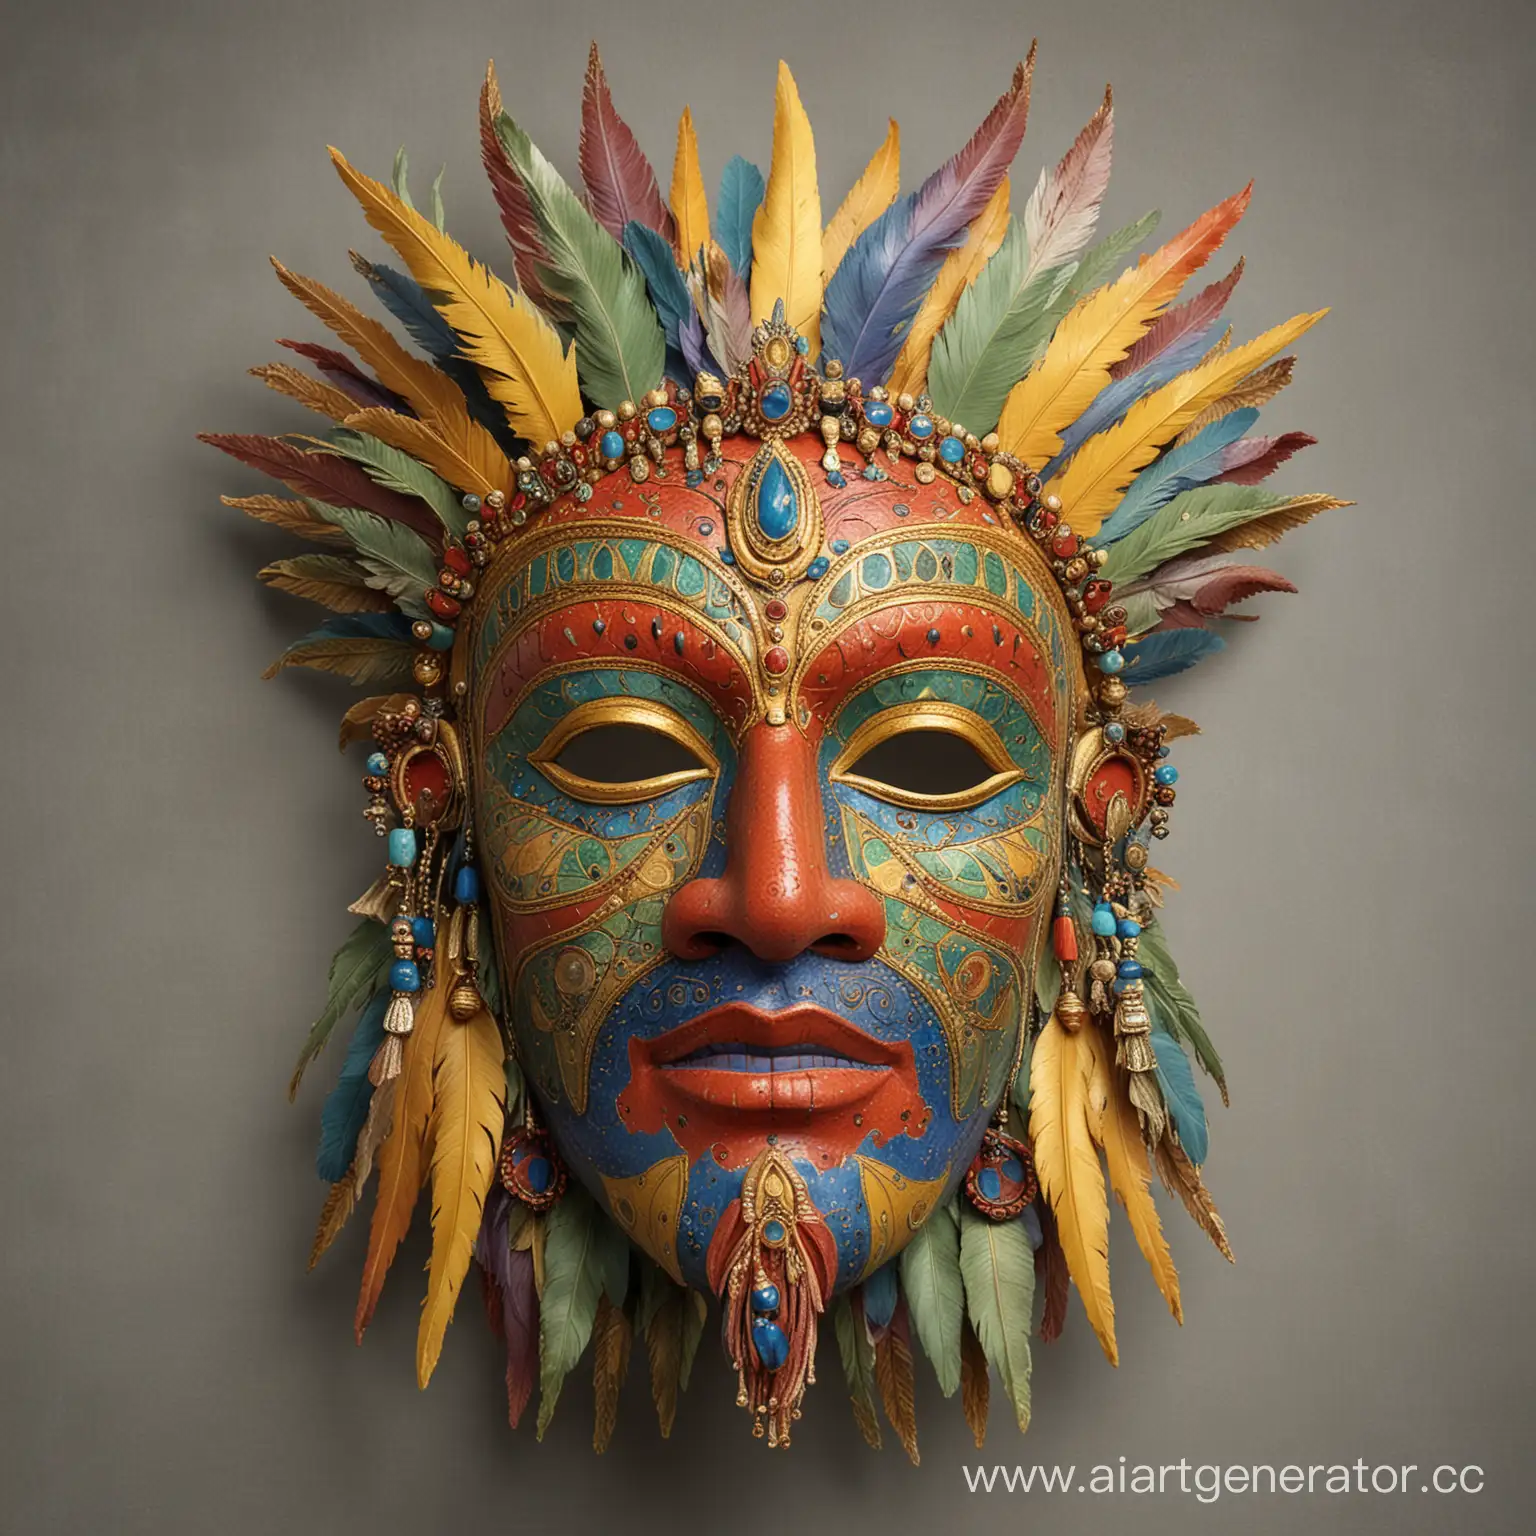 Интерьерная маска восточного мудреца , в полный размер, красочная, симметричная,  оригинально выполненная , со множеством деталей и фактур. Выполнена в желтом, красном, синем, зелёном,  фиолетовом цвете с золотом.